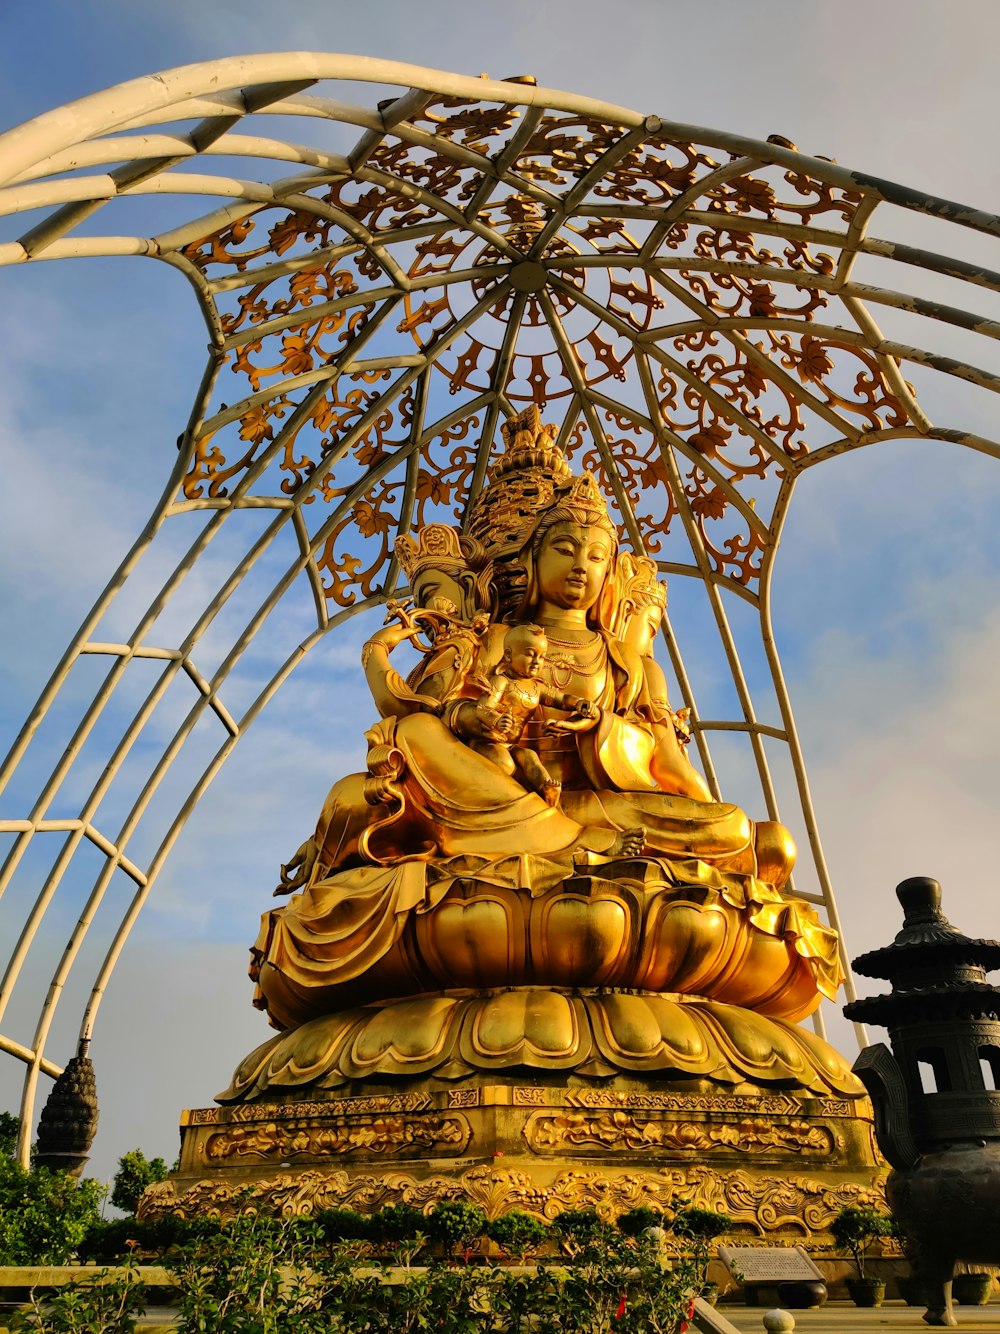 Eine goldene Buddha-Statue, die unter einer Metallstruktur sitzt